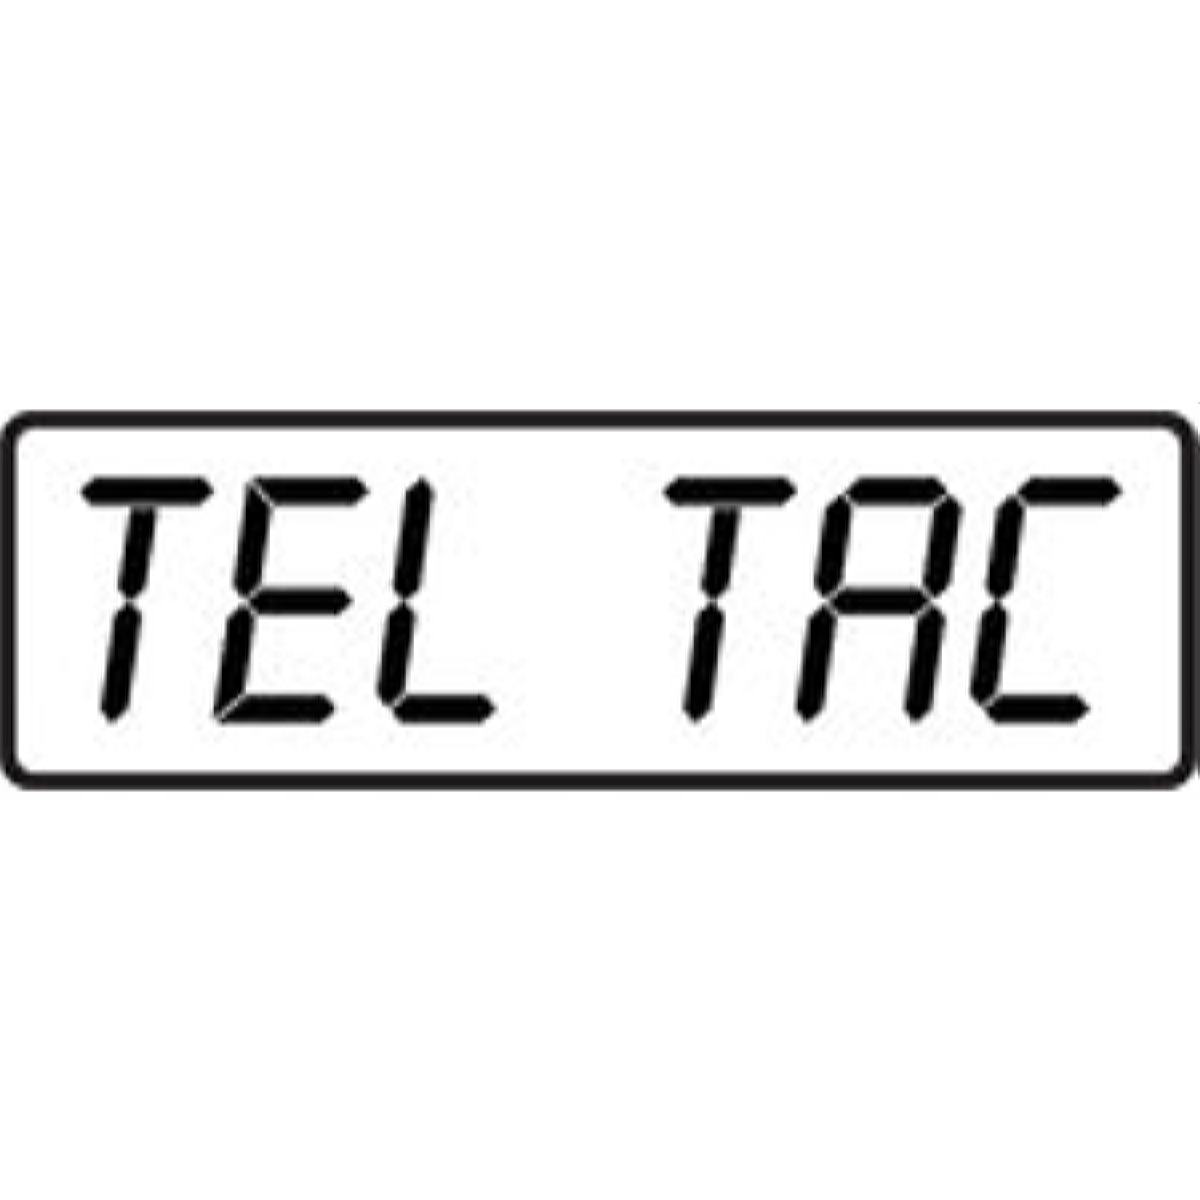 Tel-Tac